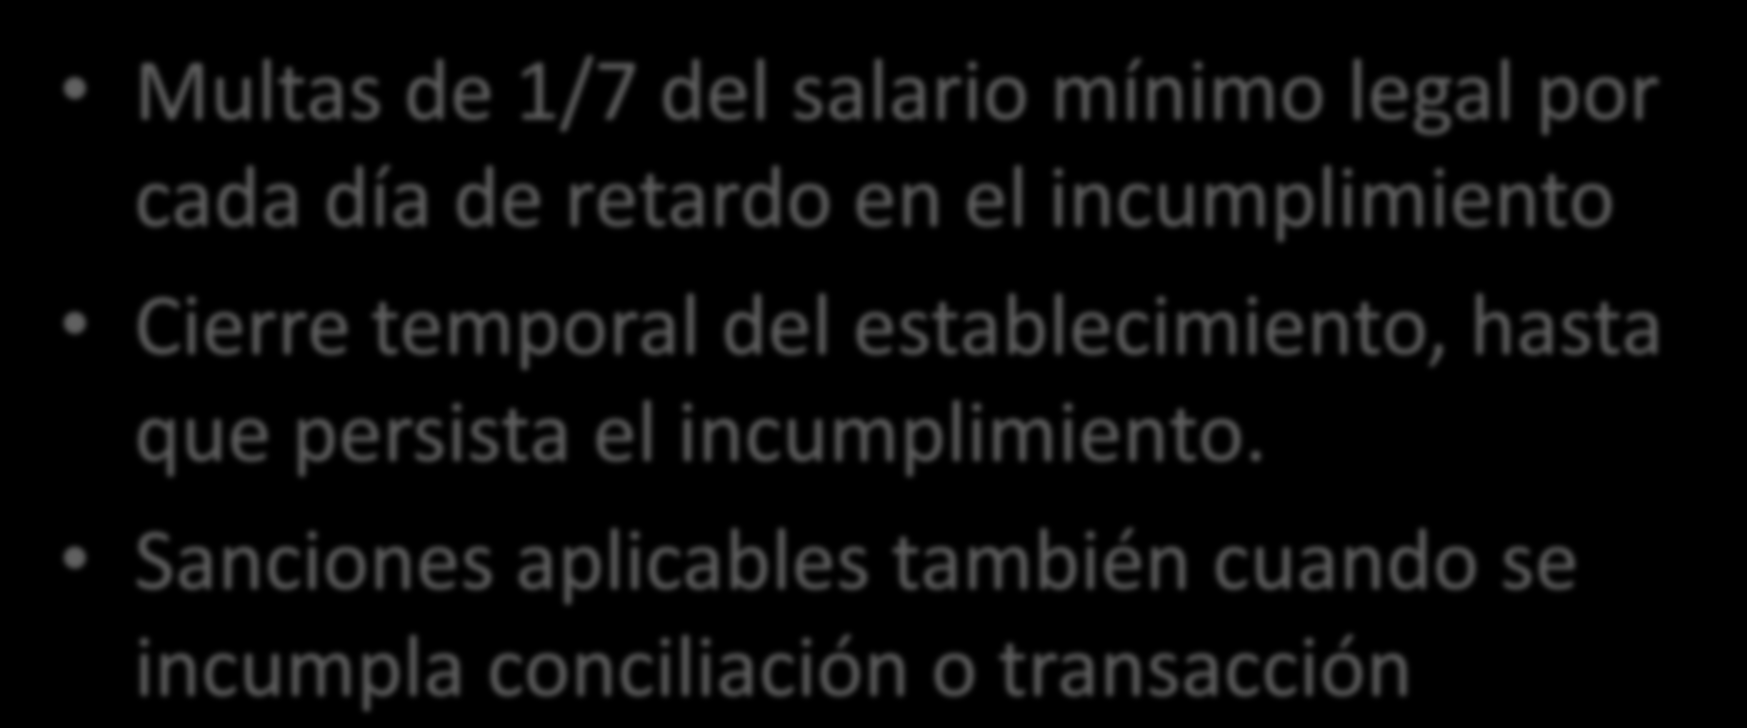 EJECUCION DE LA SENTENCIA Multas de 1/7 del salario mínimo legal por cada día de retardo en el incumplimiento Cierre temporal del